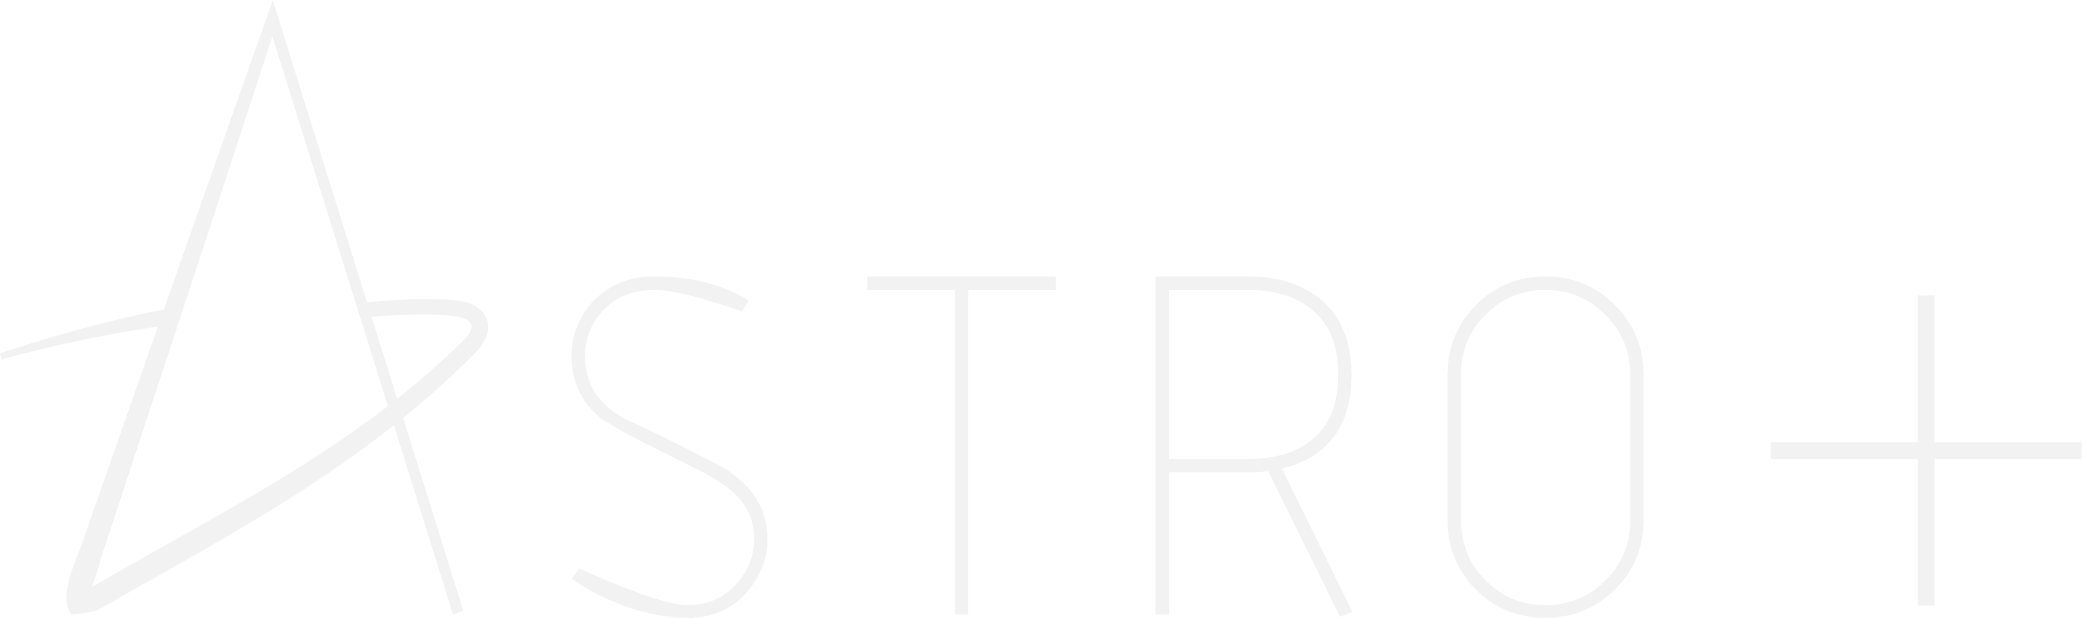 Astro Plus logo